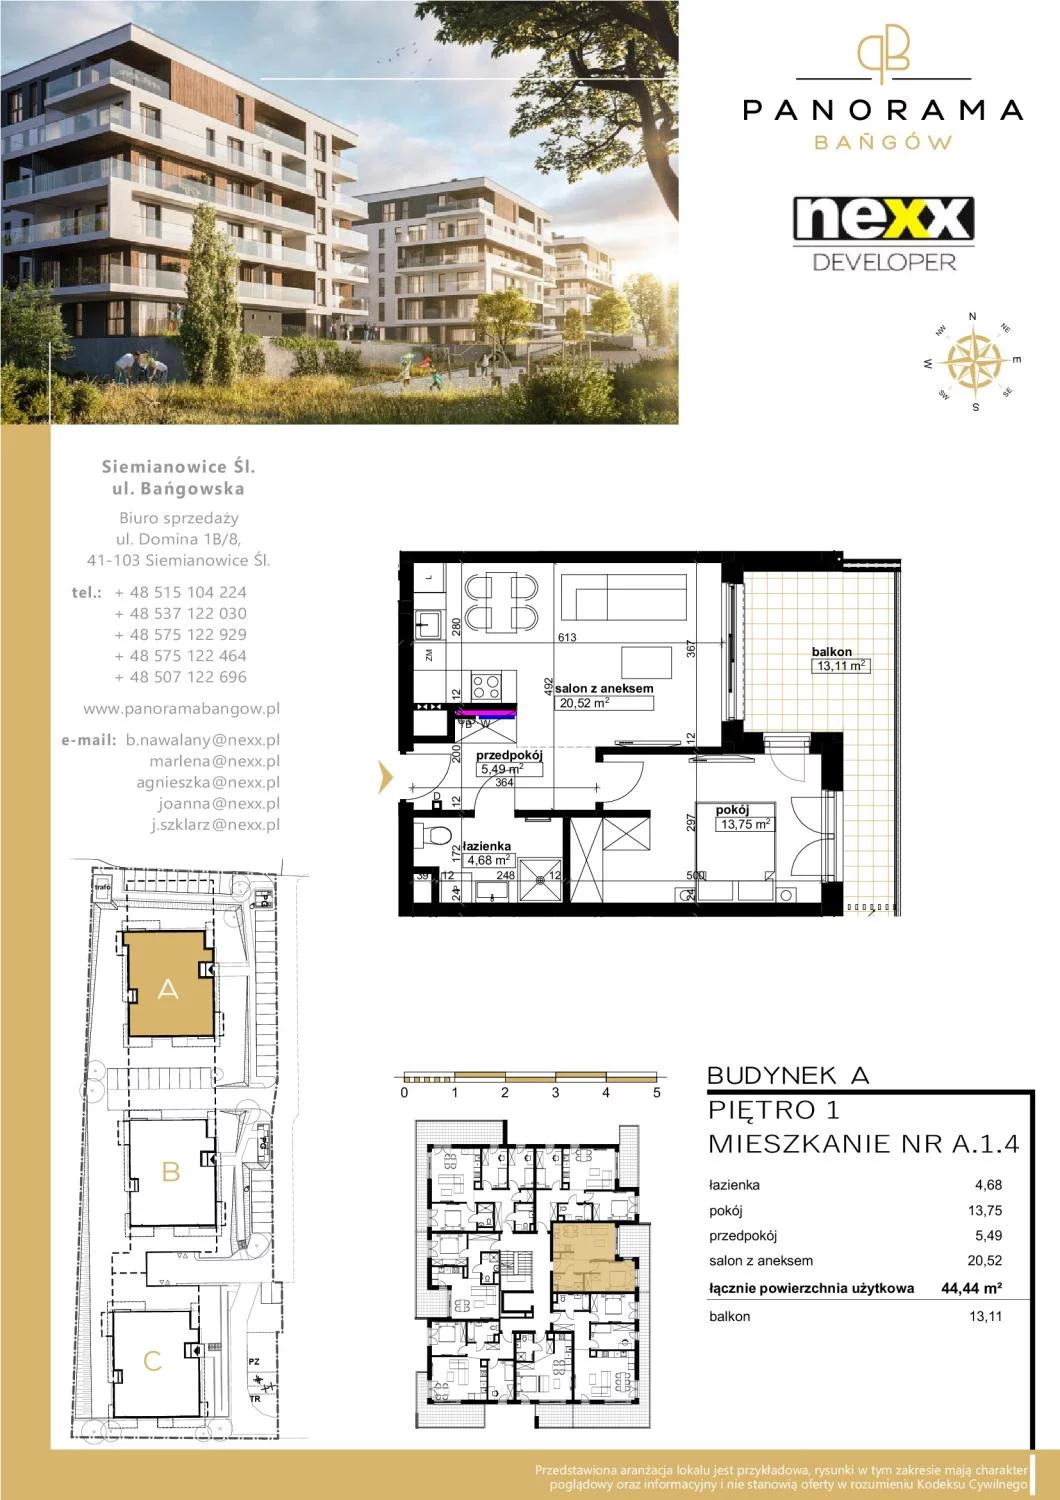 Mieszkanie 44,44 m², piętro 1, oferta nr A 1.4, Panorama Bańgów, Siemianowice Śląskie, Bańgów, ul. Bańgowska